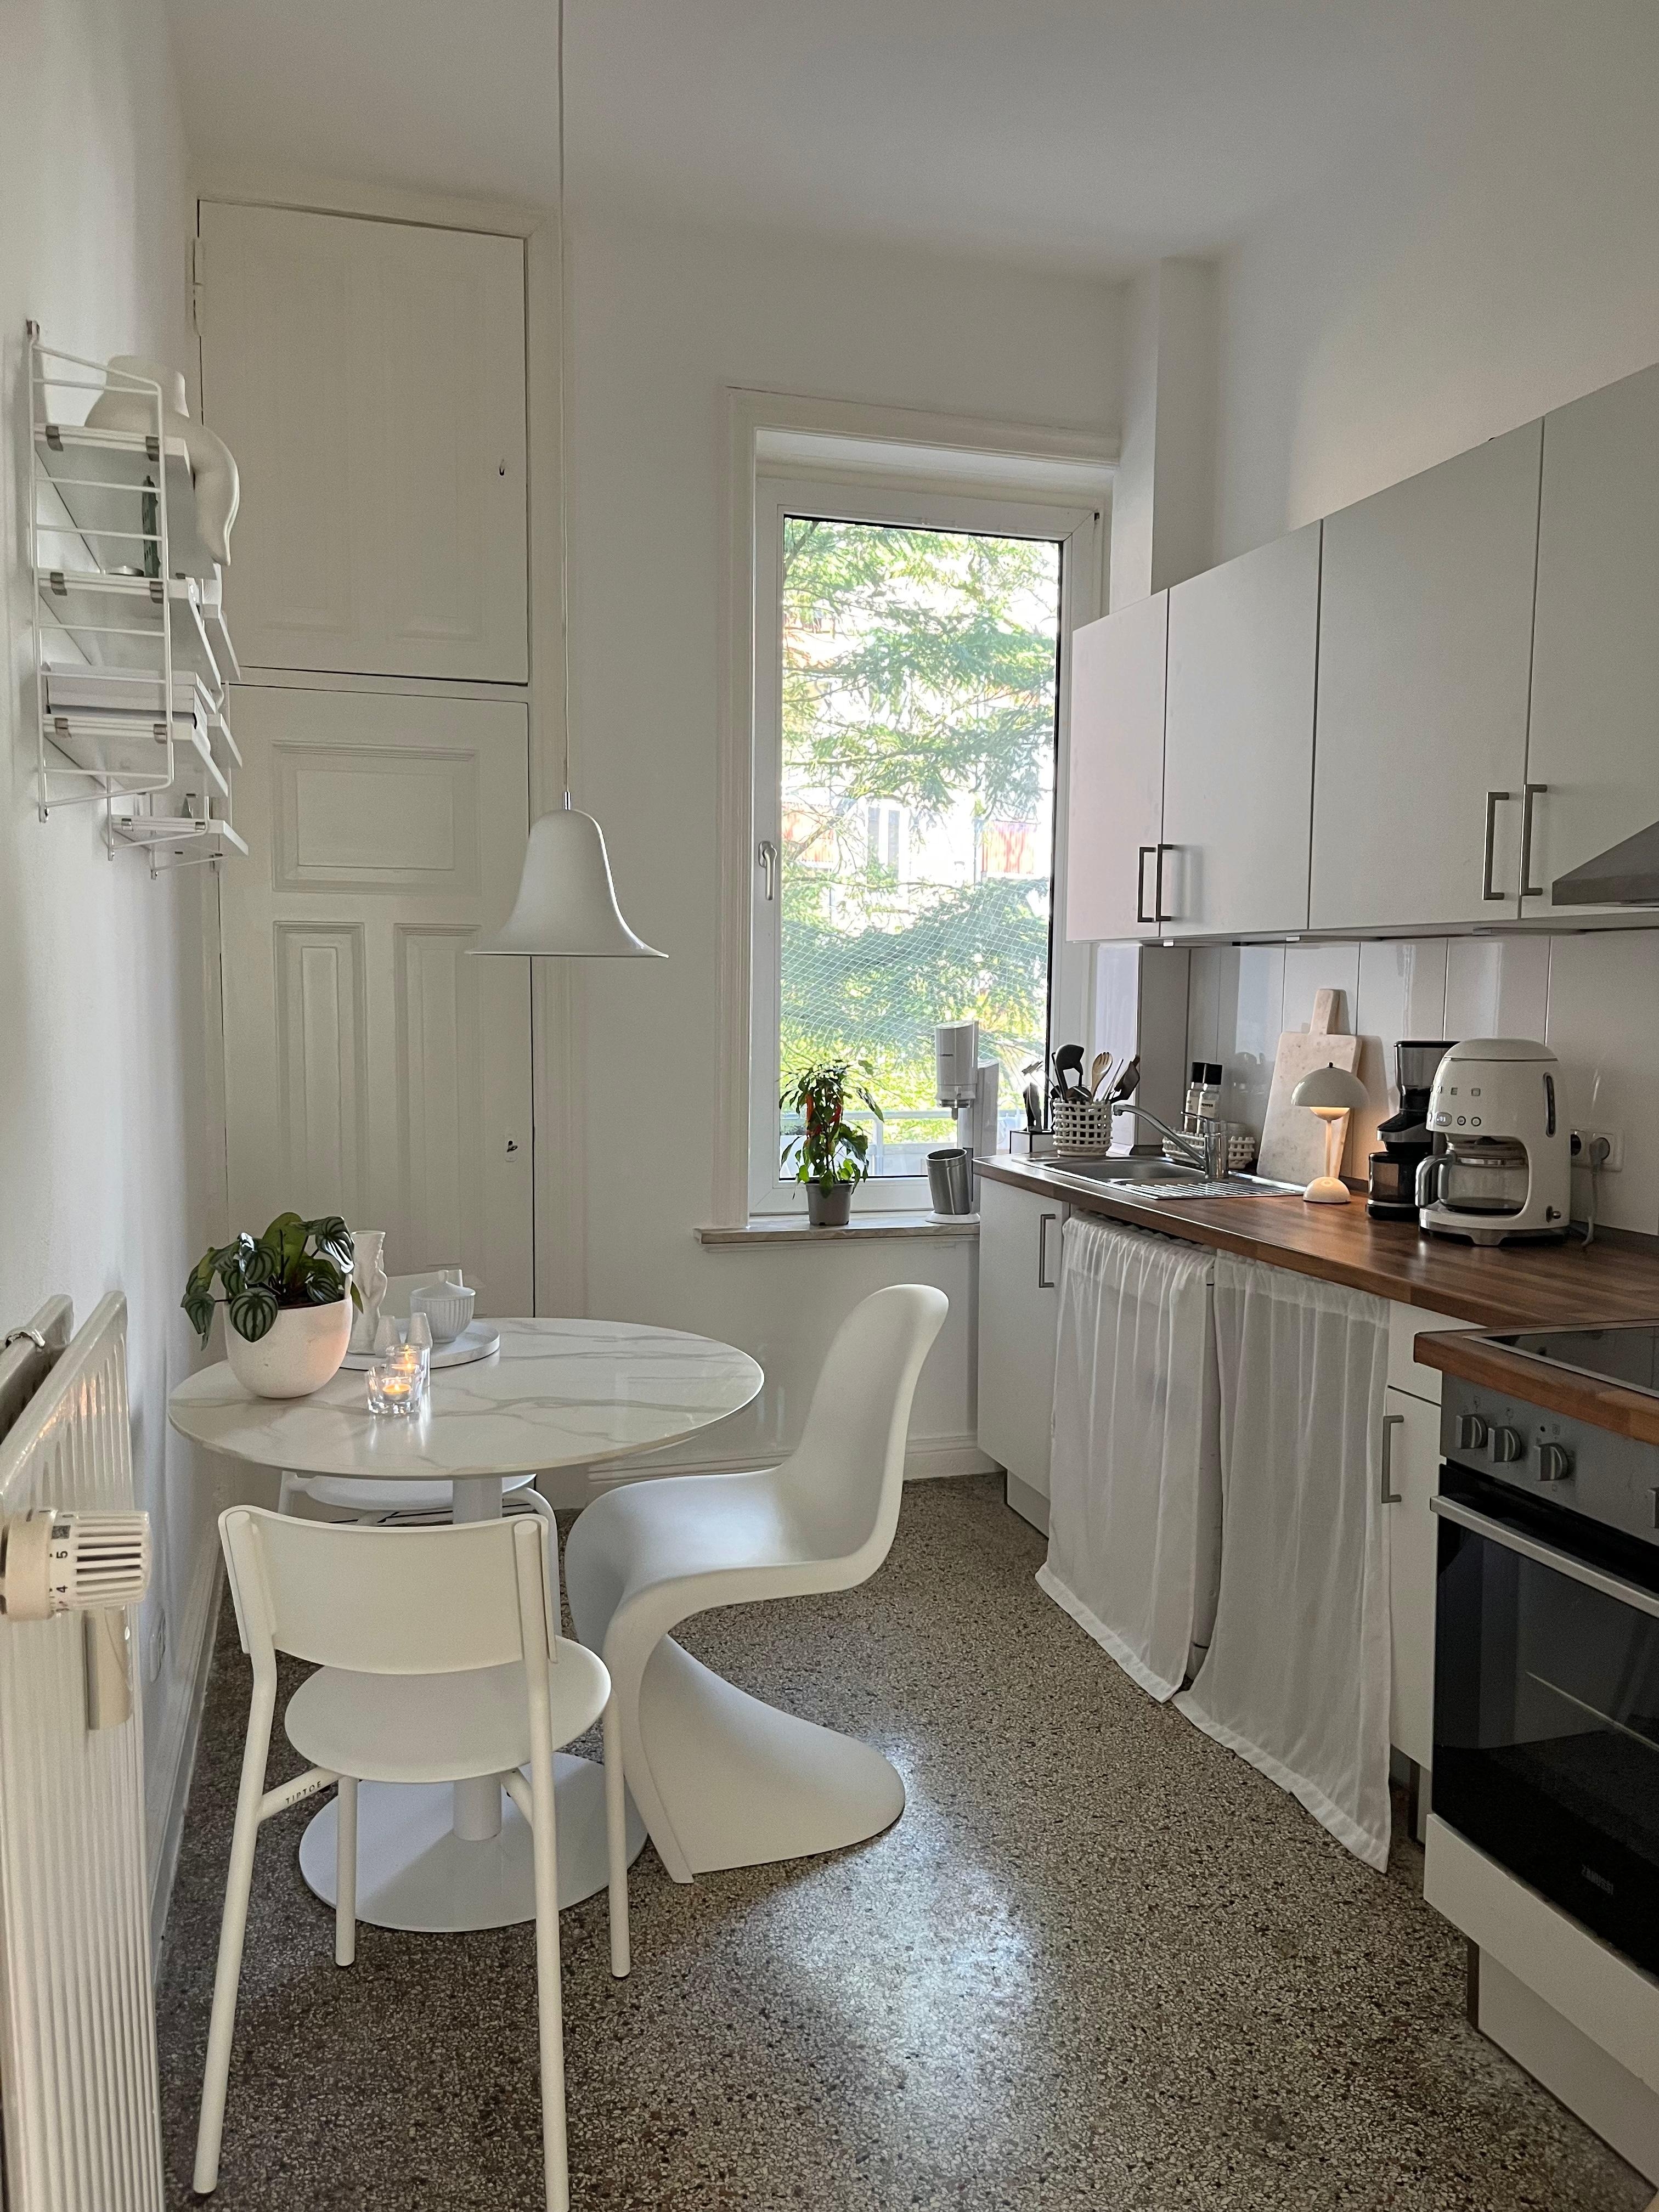 #kücheninspo #küchendesign #weißeküche #altbauwohnung #terrazzoboden #skandinavischwohnen